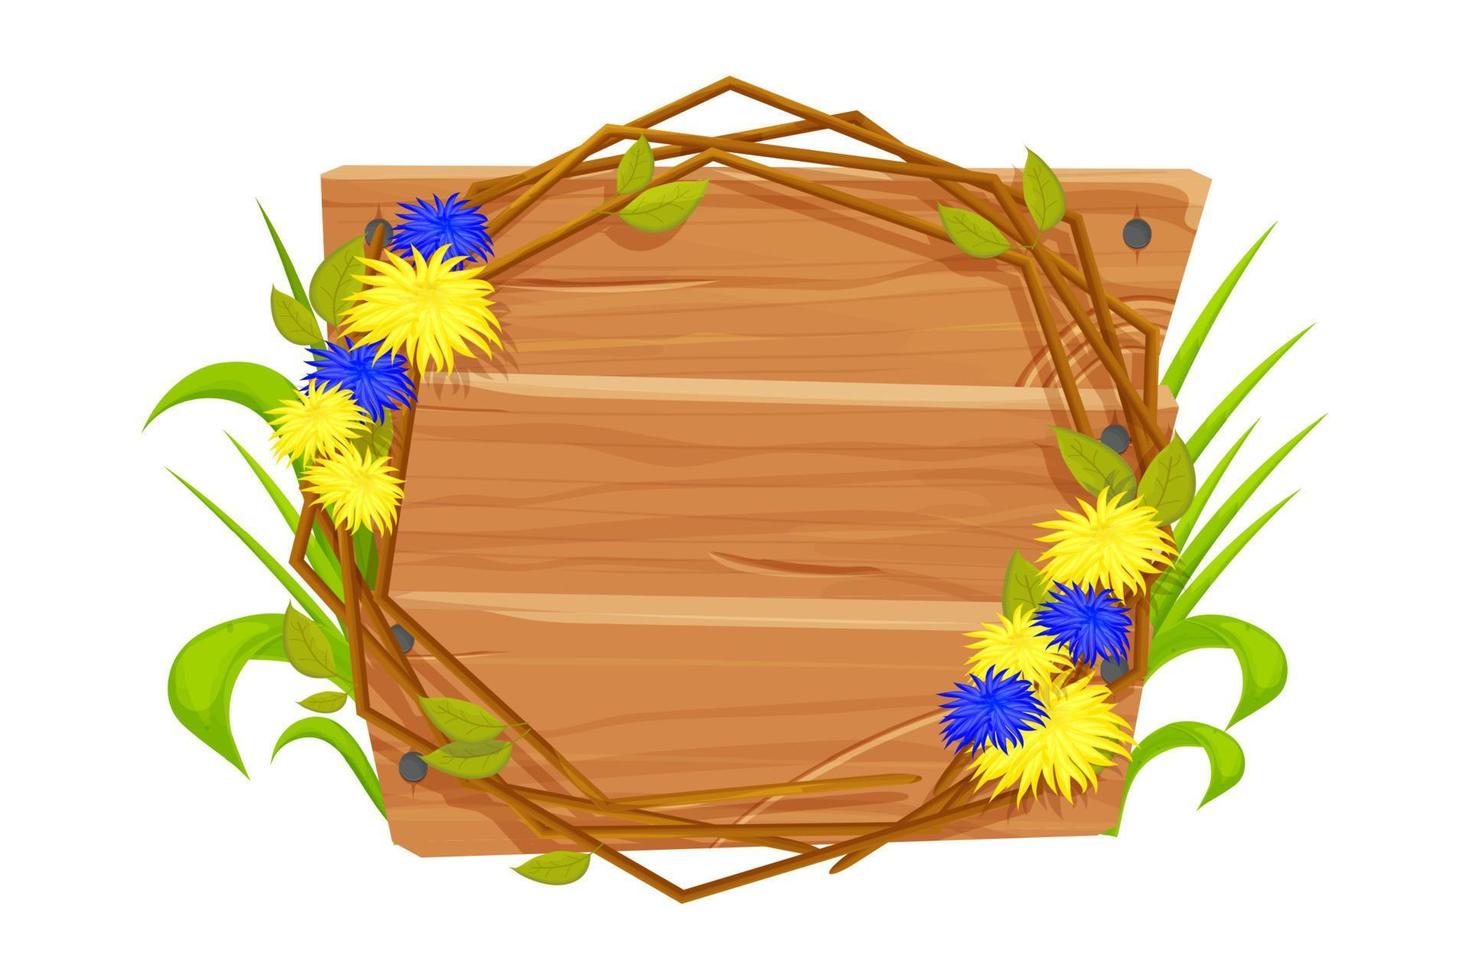 träram med blommor i nationella färger av ukrainska flaggan dekorerad med gräs i tecknad stil. stöd koncept, banner. vektor illustration